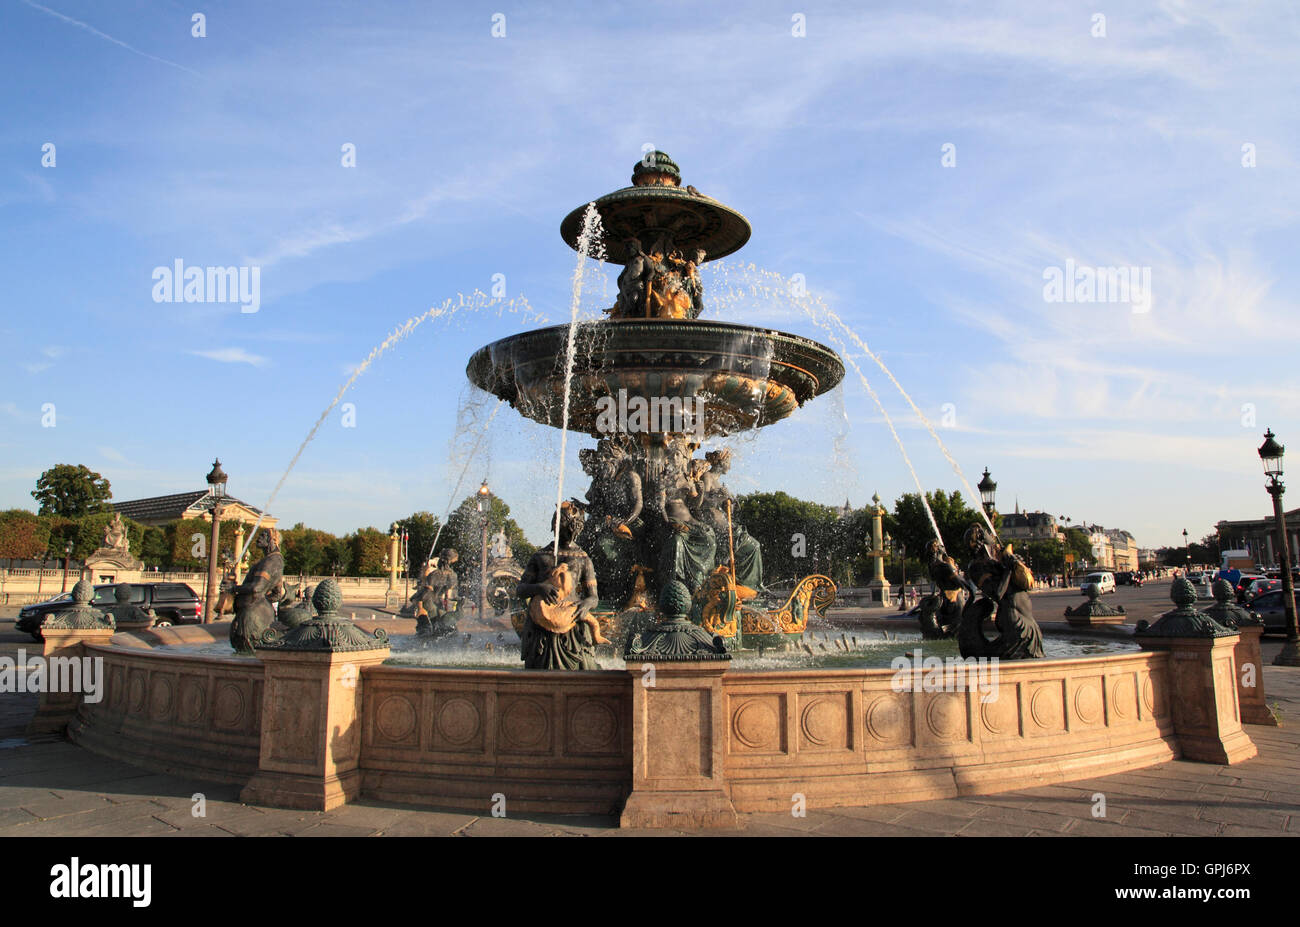 L'une des fontaines fleuries sur la Place de la Concorde, Paris, France, Europe Banque D'Images